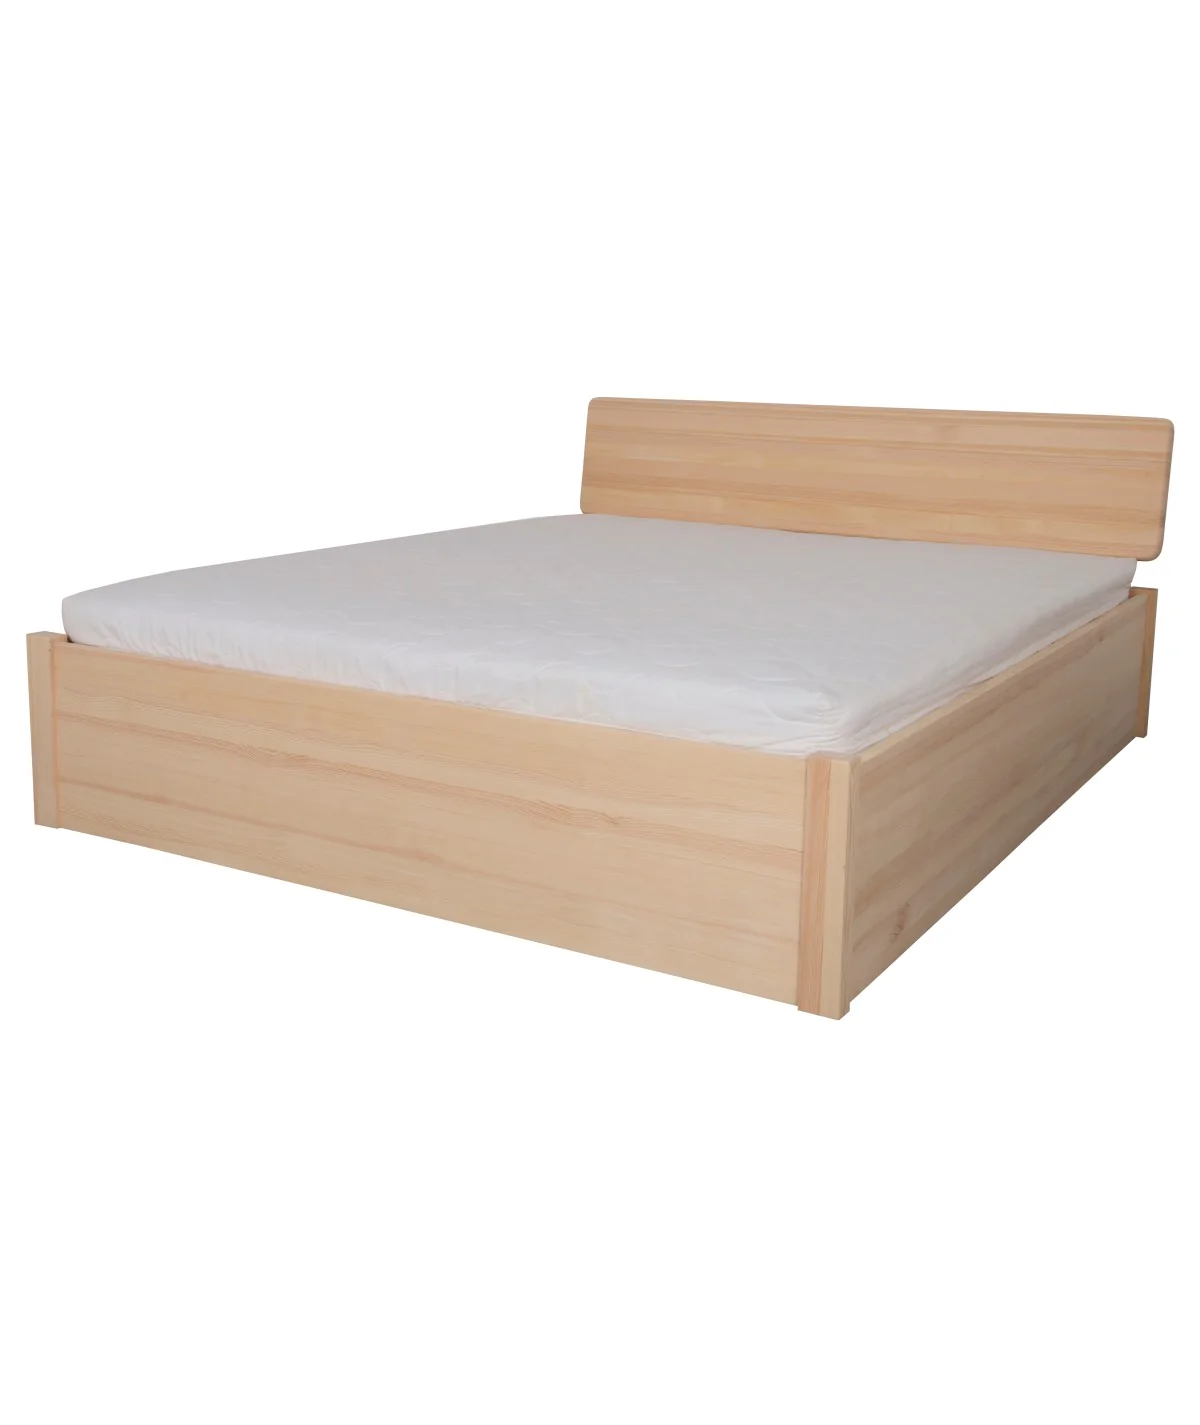 Łóżko sosnowe SODALIT 3 STOLMIS podnoszone na ramie drewnianej